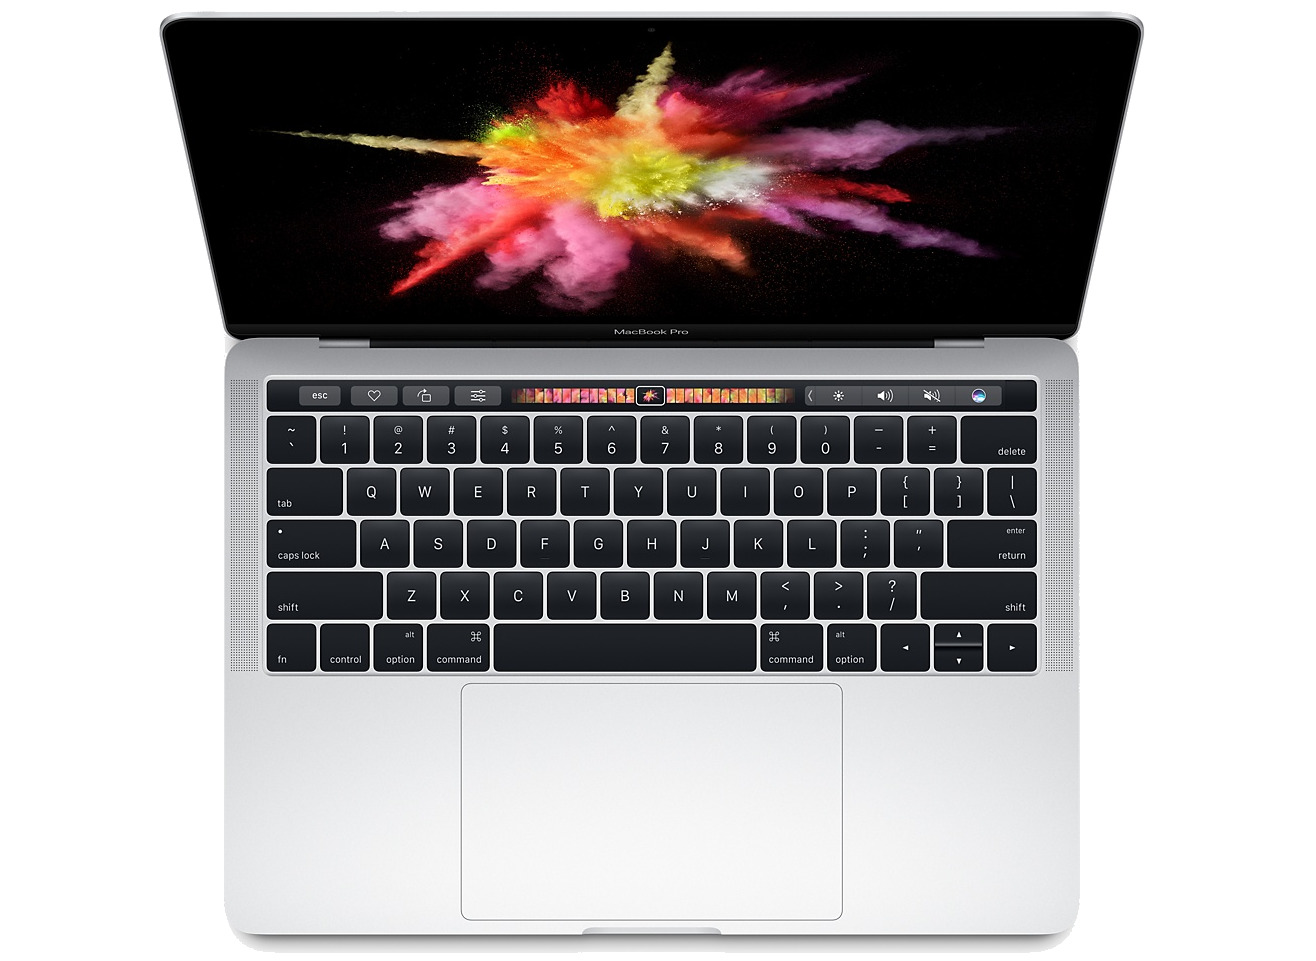 2016 13 inch MacBook Pro with TouchBar